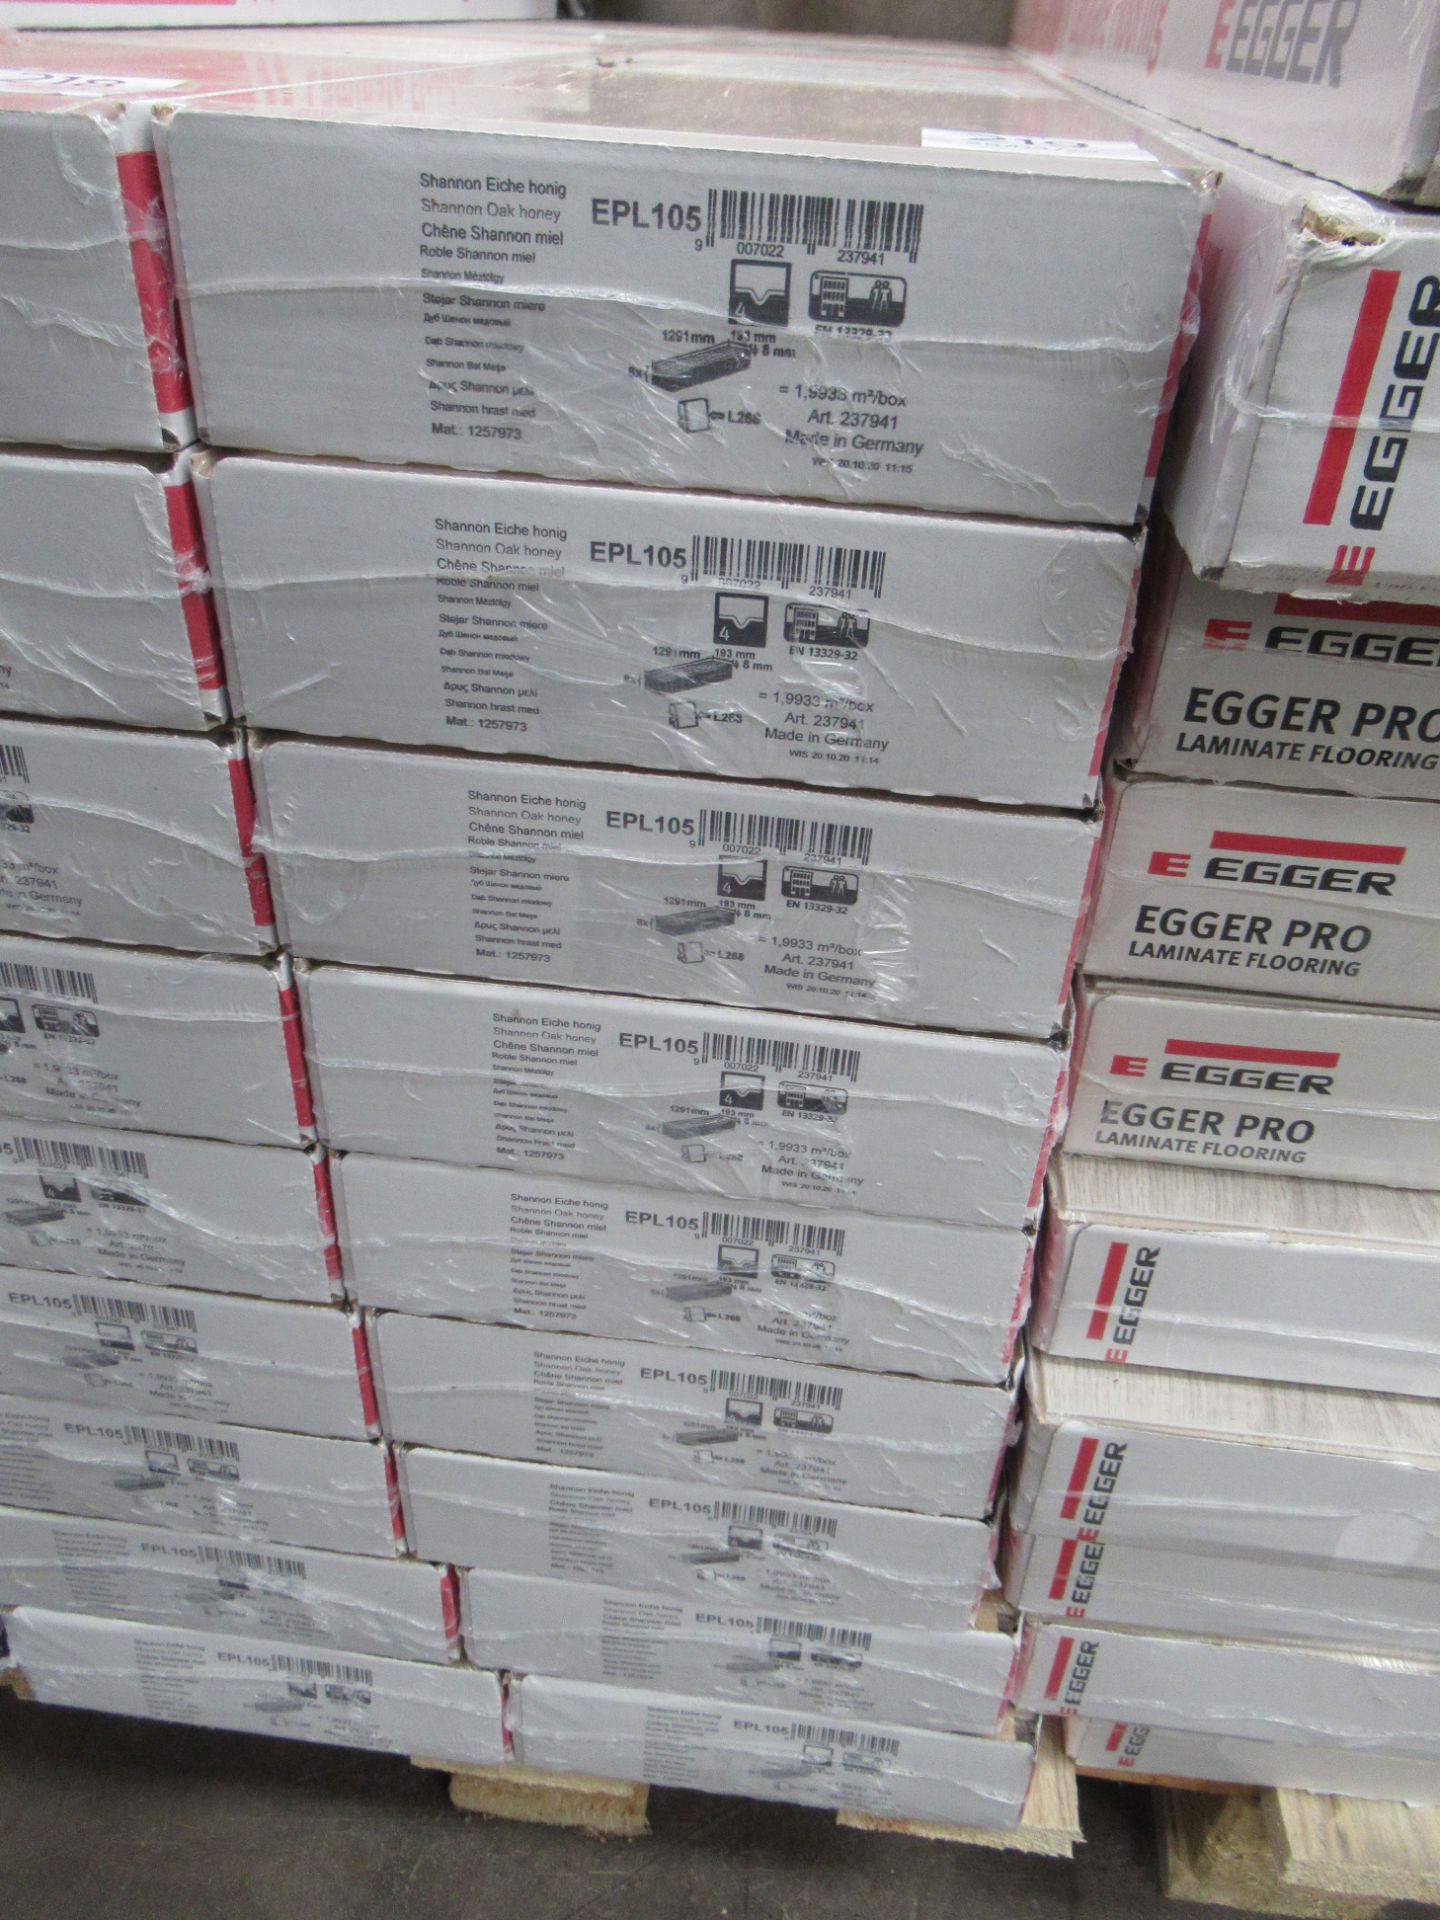 9x Packs of Egger Pro Laminate Flooring in Shannon Oak Honey - 2.0m2 per pack